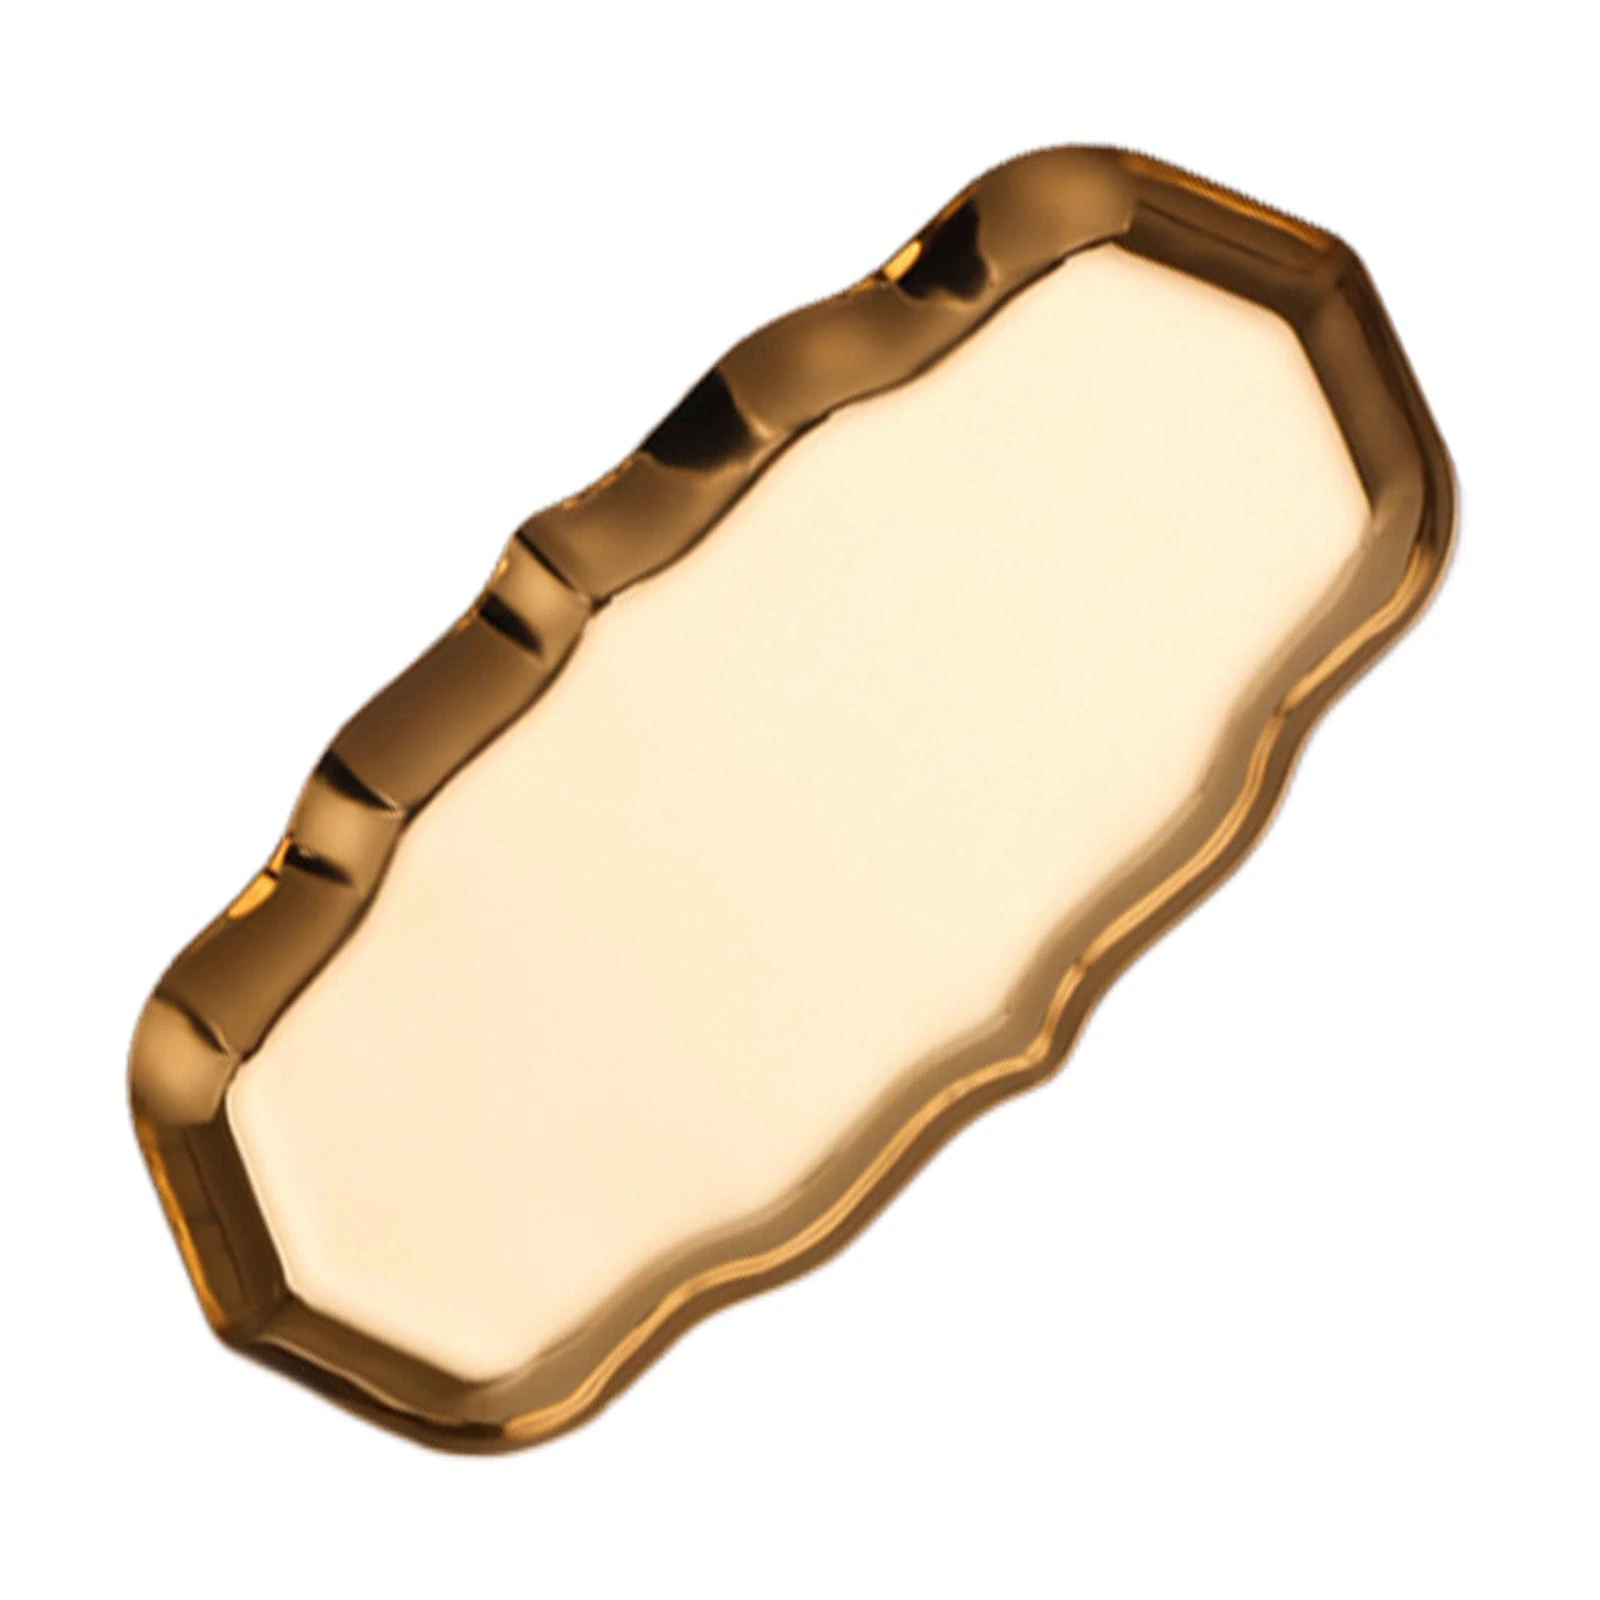 Лоток BYFASHION для стерилизации и хранения инструментов металлический фигурный золотой